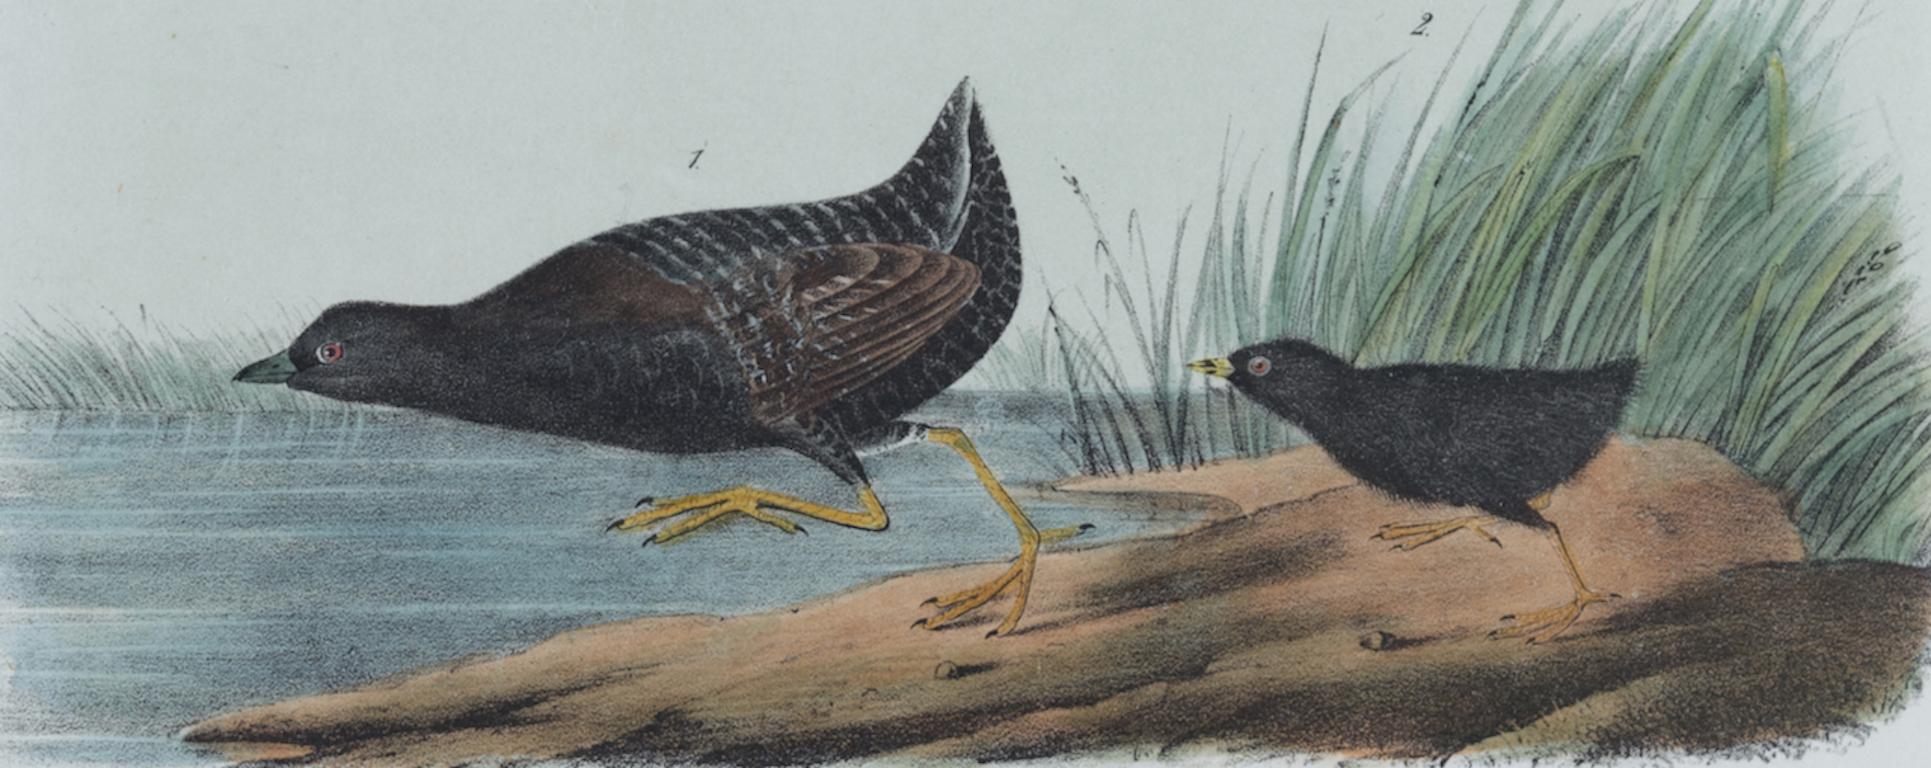 Aquarelle Least : une lithographie originale d'oiseaux Audubon du 19e siècle, colorée à la main  - Print de John James Audubon